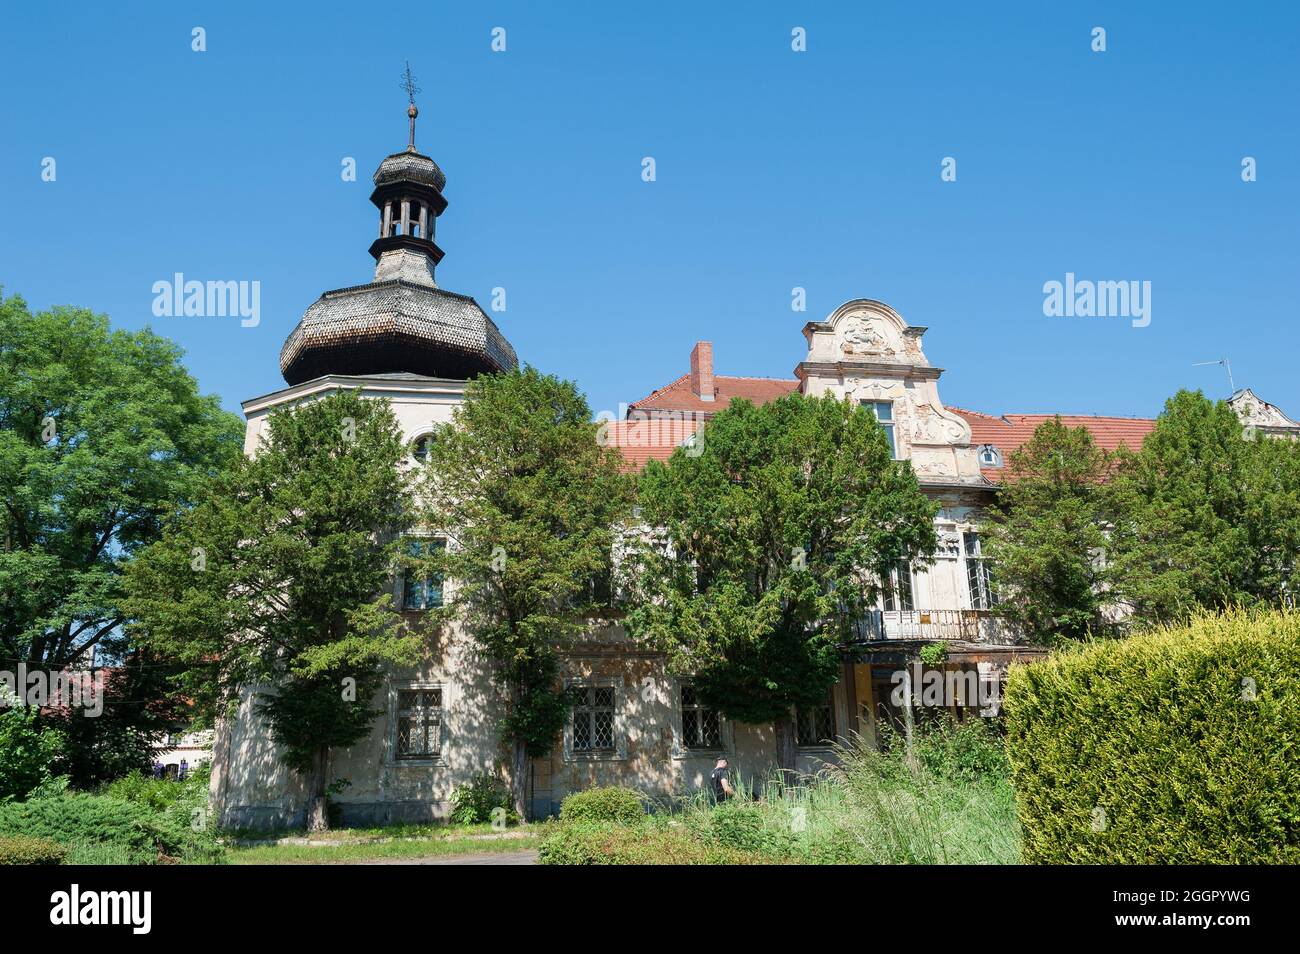 Palast in Turawa, Woiwodschaft Opole in Südpolen Stockfoto